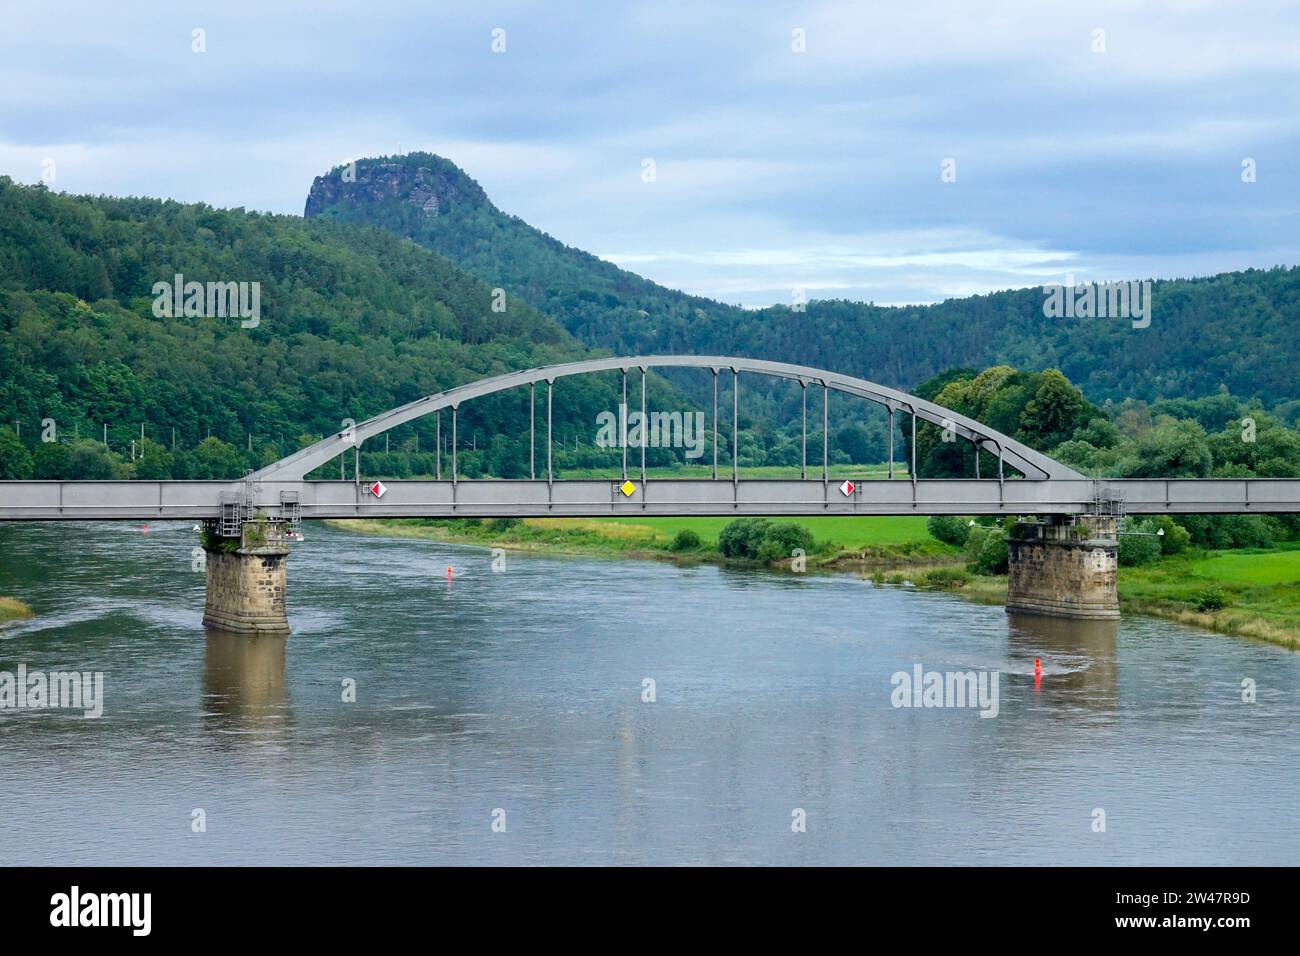 Ponte ferroviario ad arco in acciaio nella valle del fiume Elba, monte Lilienstein sullo sfondo Foto Stock